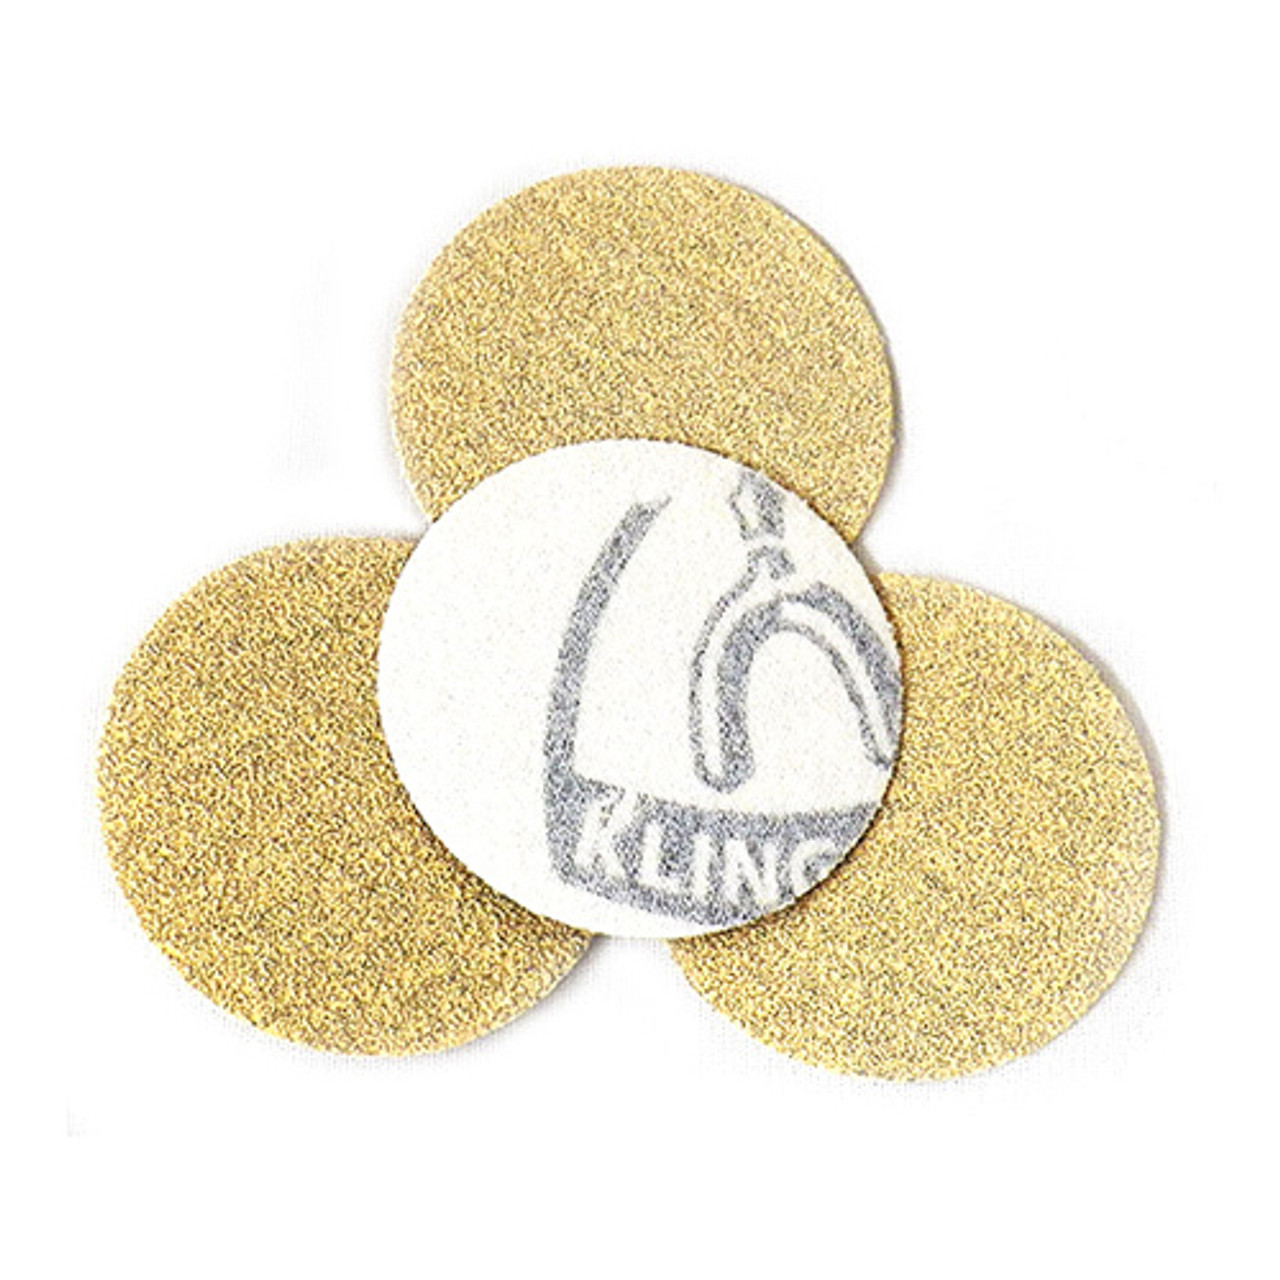 Klingspor Abrasives Stearated Aluminum Oxide, 3" Hook & Loop Discs, 150 Grit, 50pk